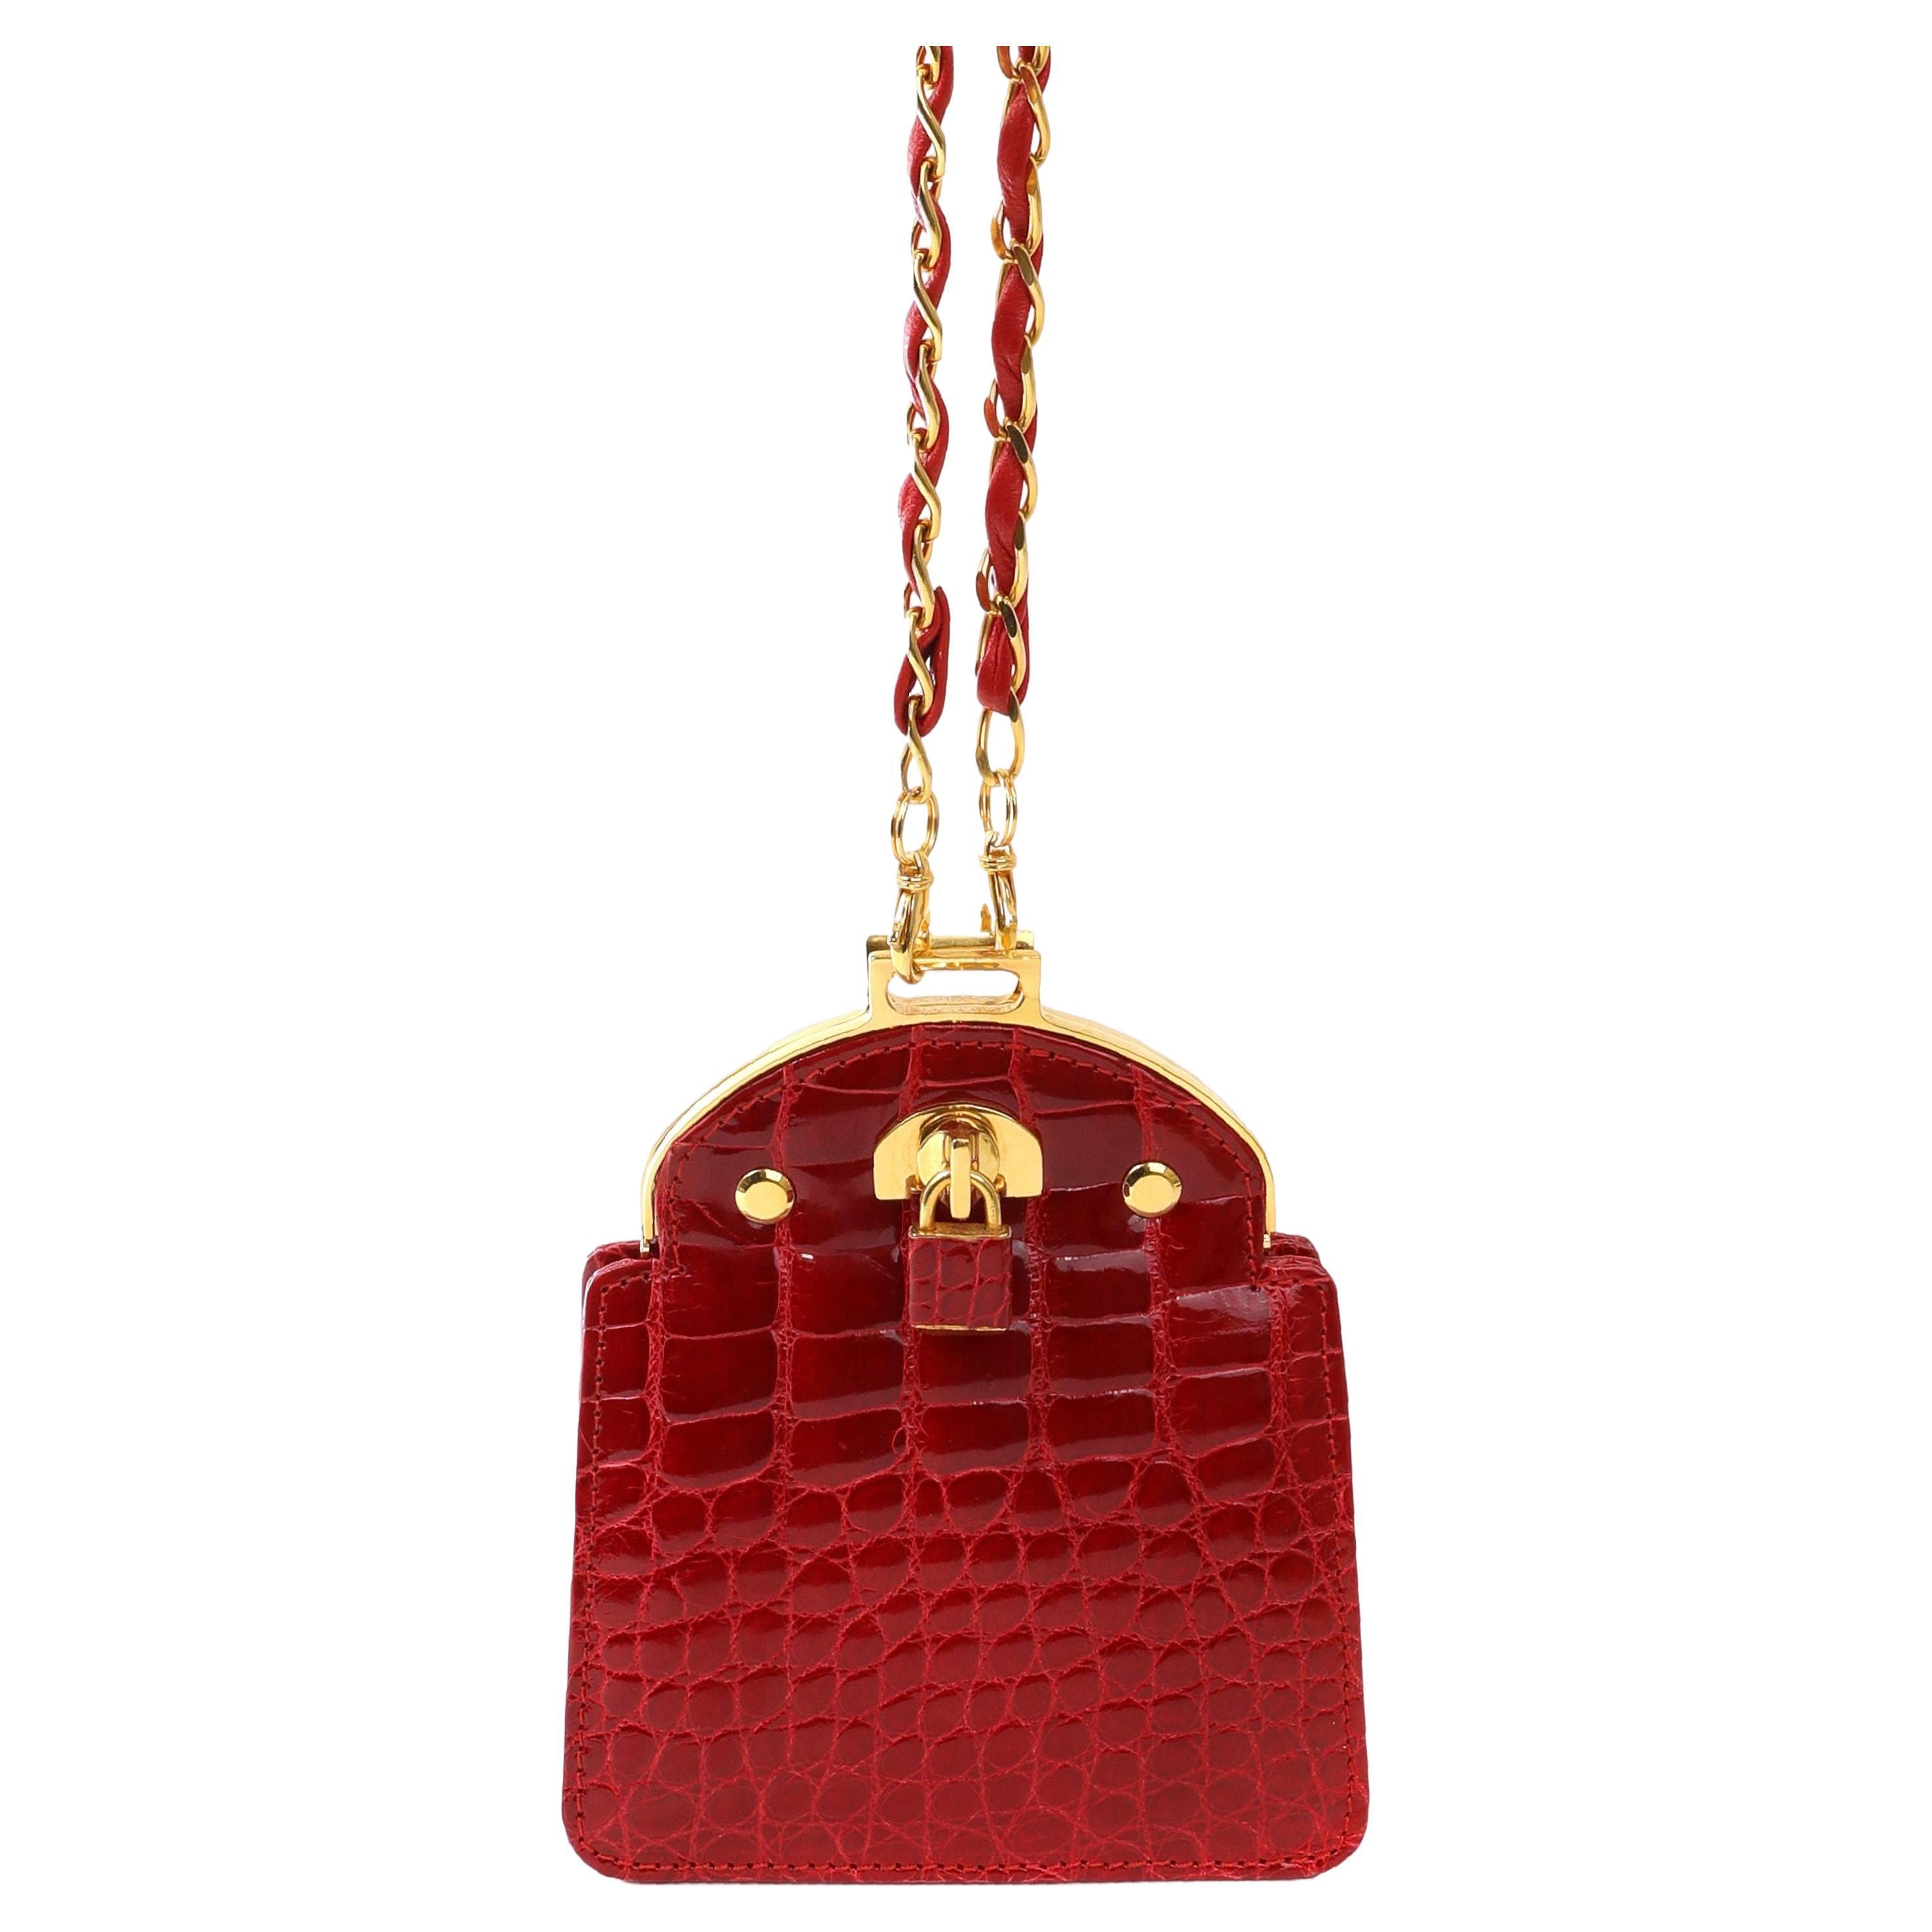  Giorgio's - Mini sac de soirée vintage en crocodile rouge, avec accessoires en or